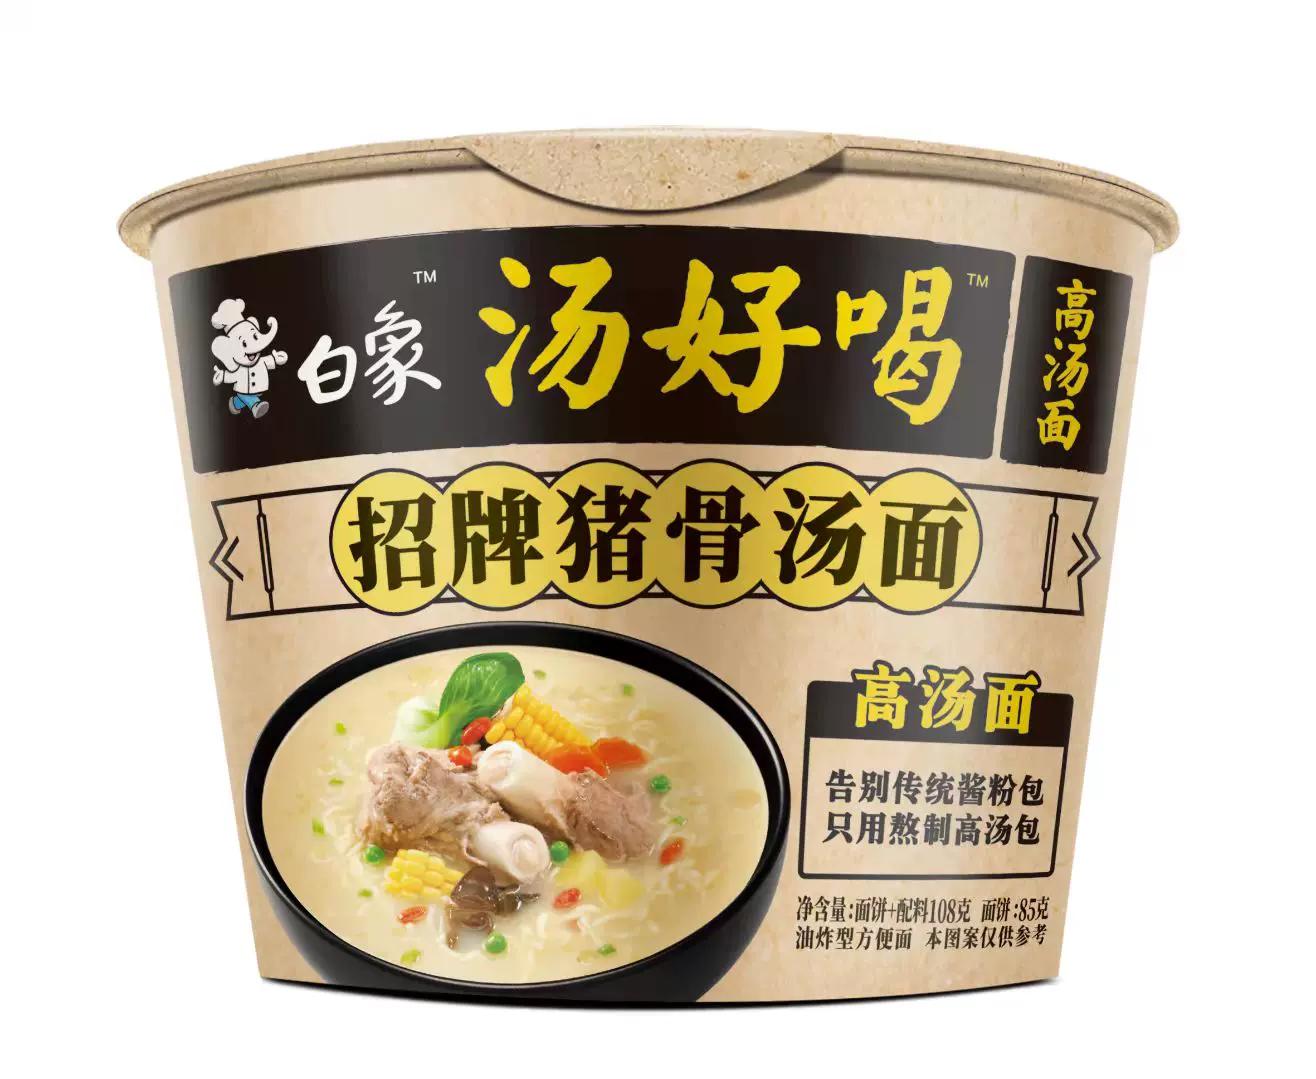 bx-instant-noodle-bowl-series-artificial-pork-bone-soup-noodle